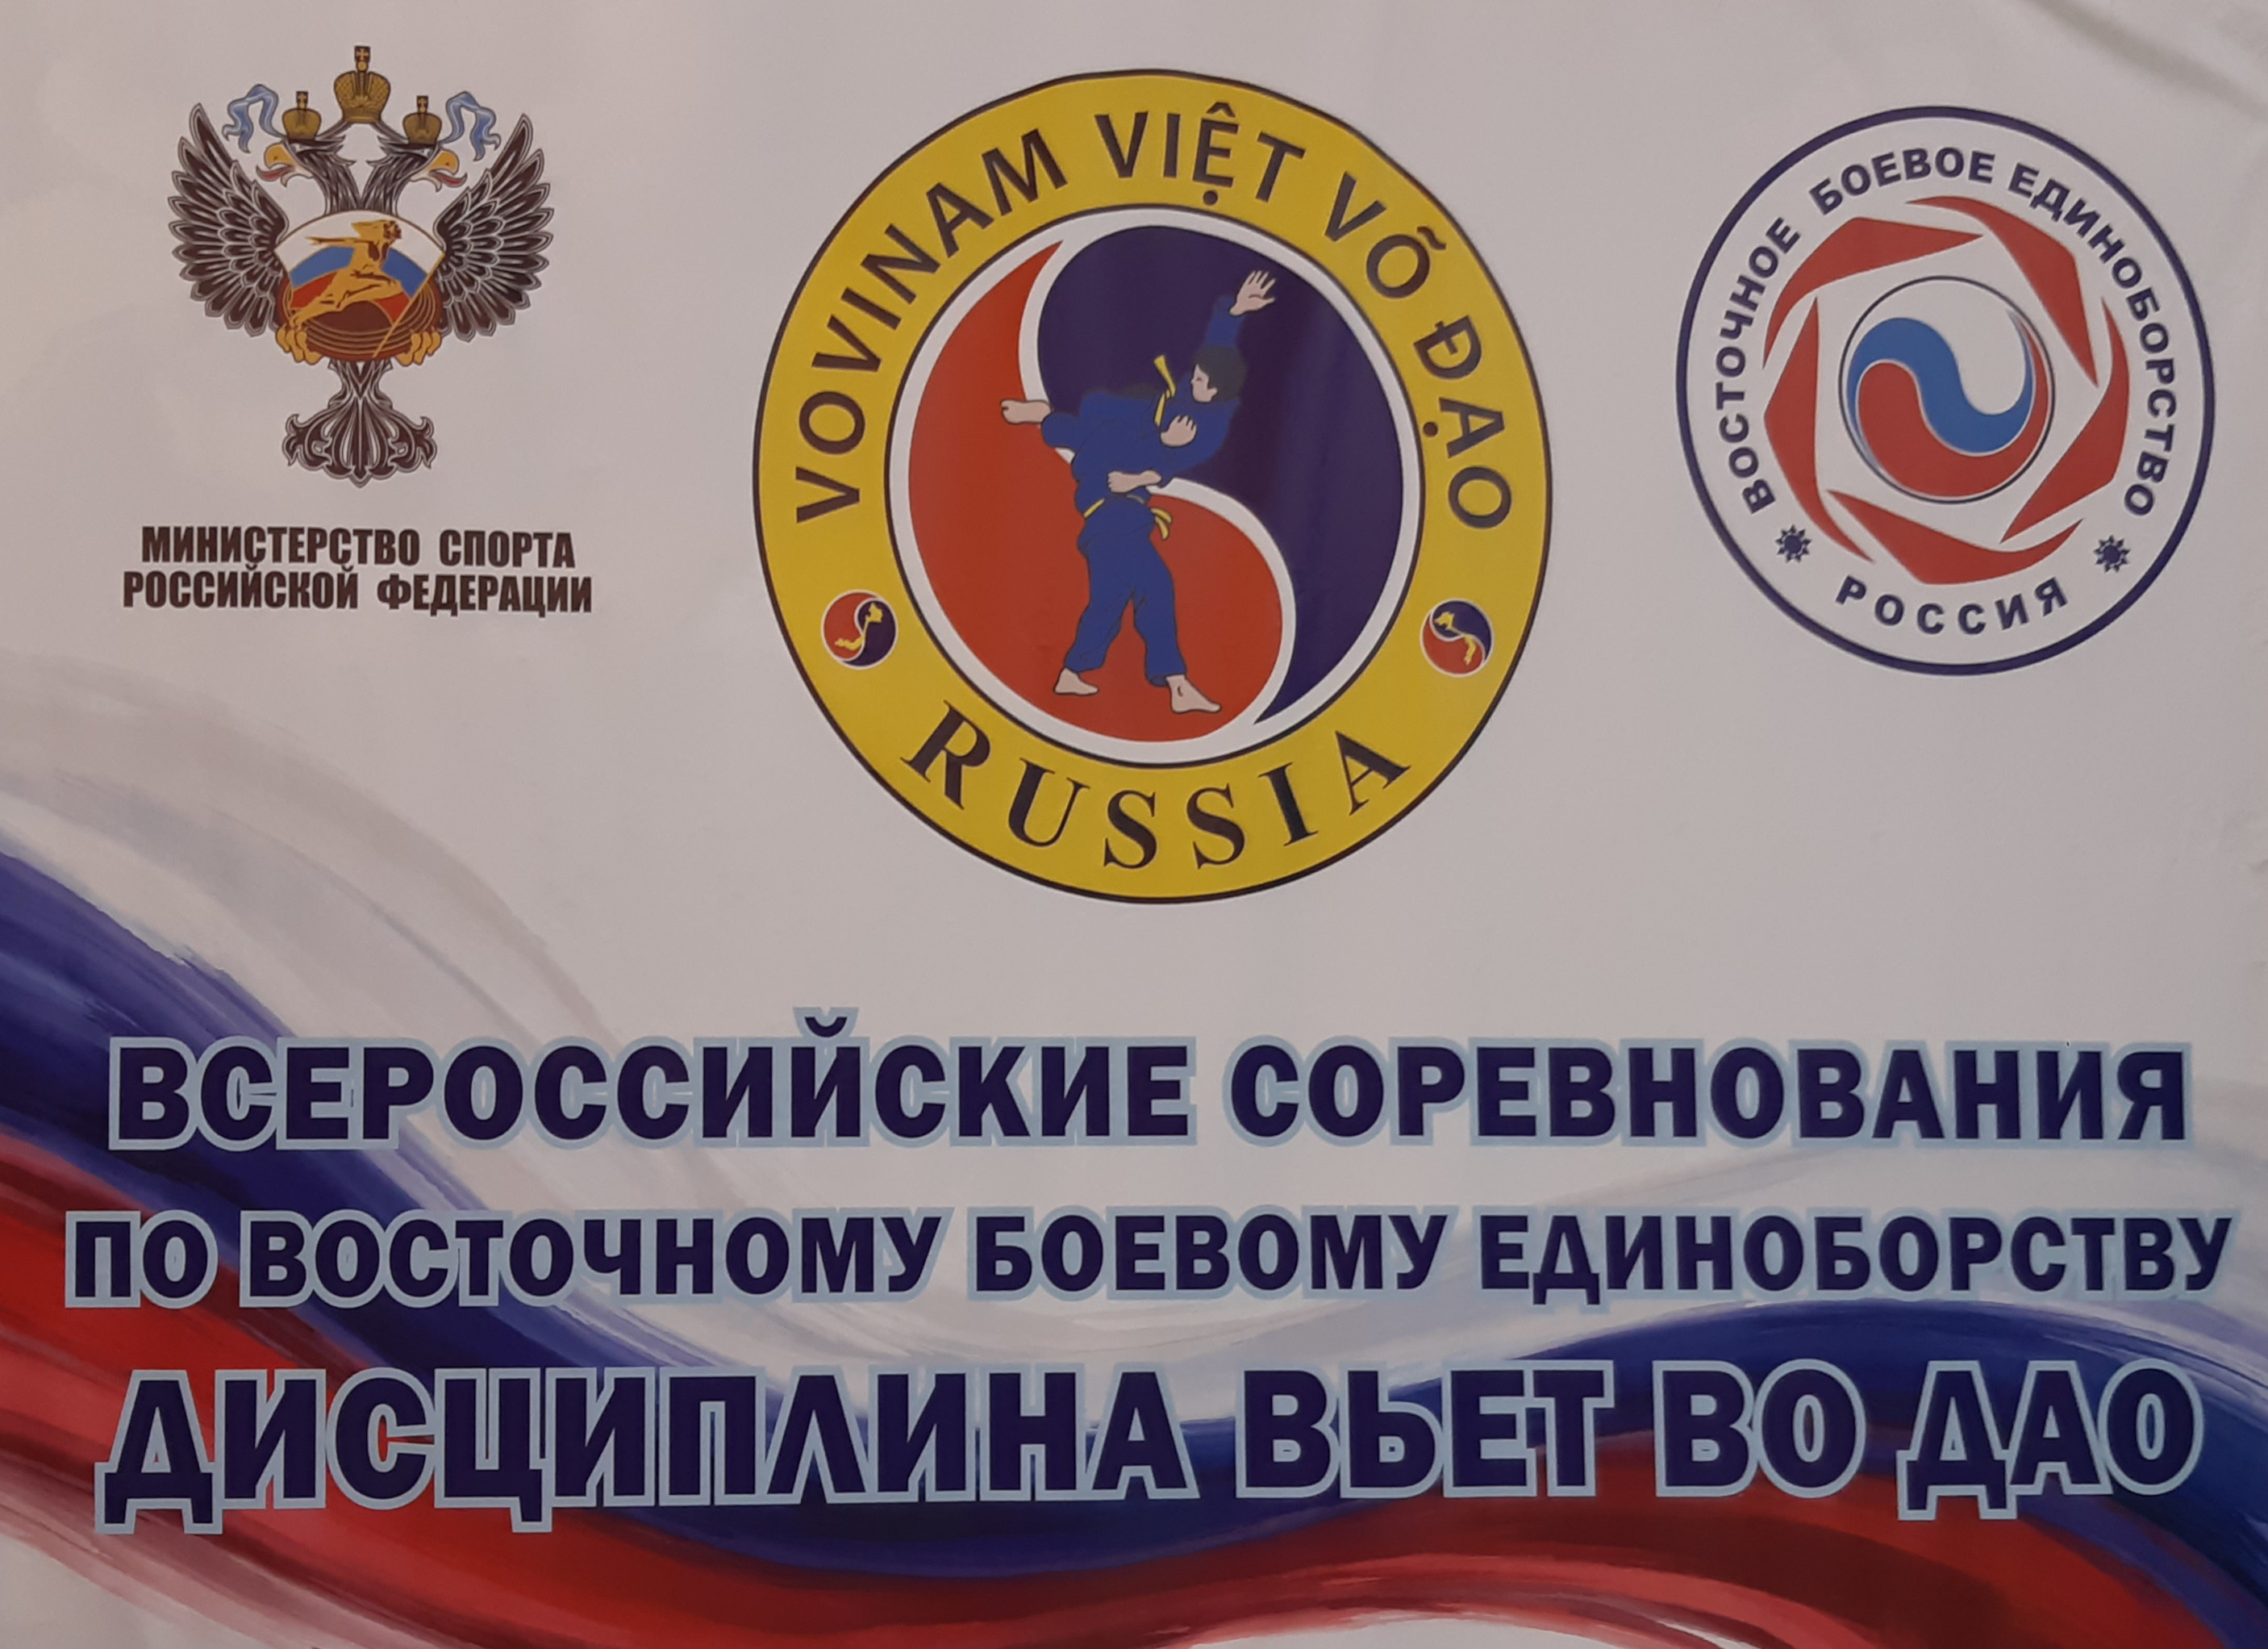 Всероссийские соревнования по ВБЕ Вьет Во Дао 2021 в г. Красноармейске